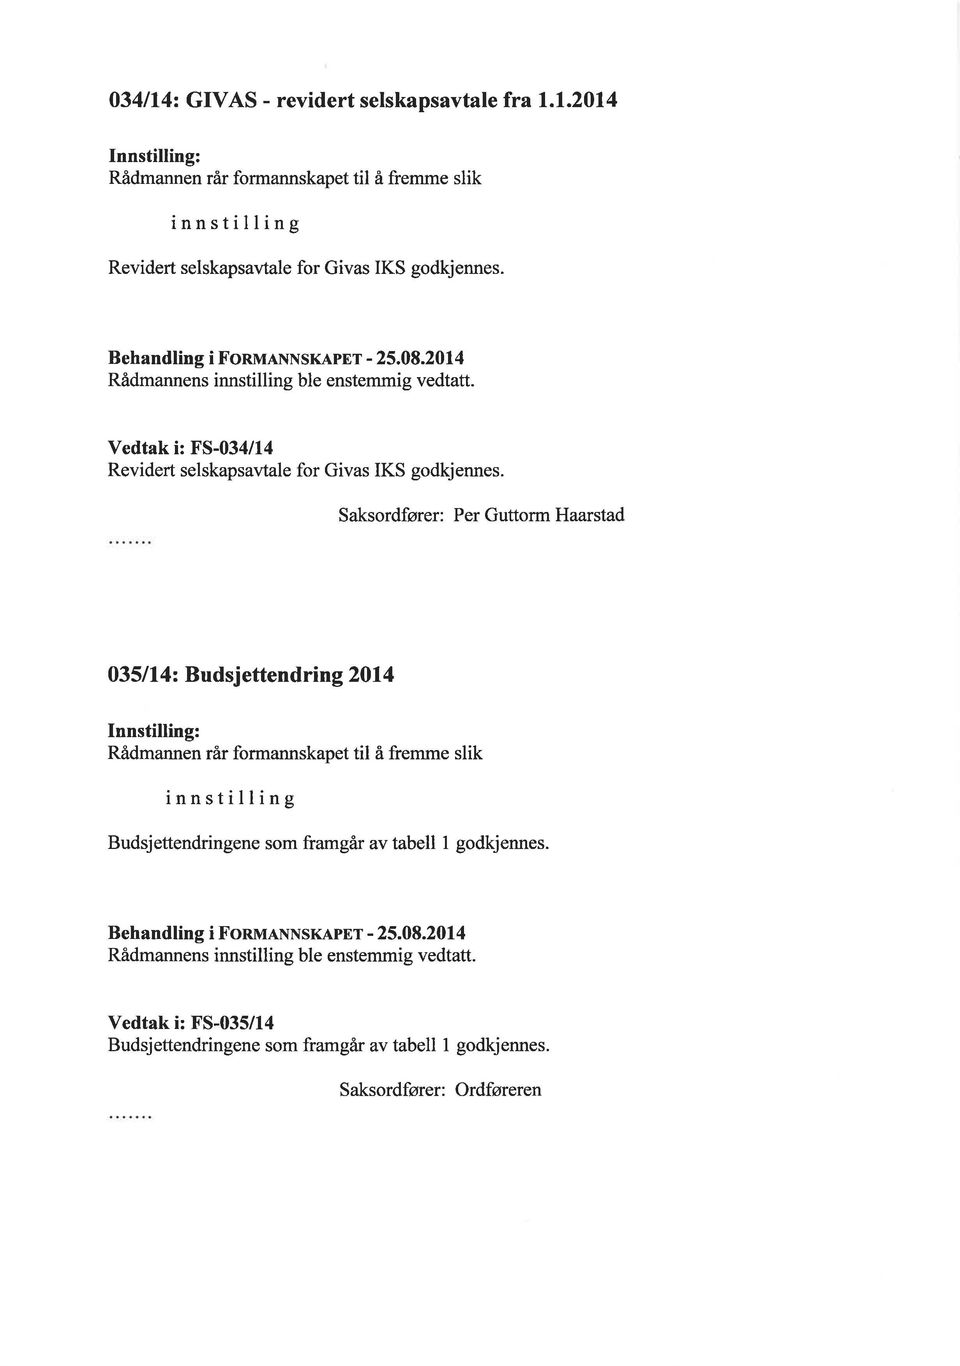 Saksordfører: Per Guttorm Haarstad 035ll4z Budsjettendring 2014 innstilling Budsjettendringene som framgår av tabell I godkjennes.